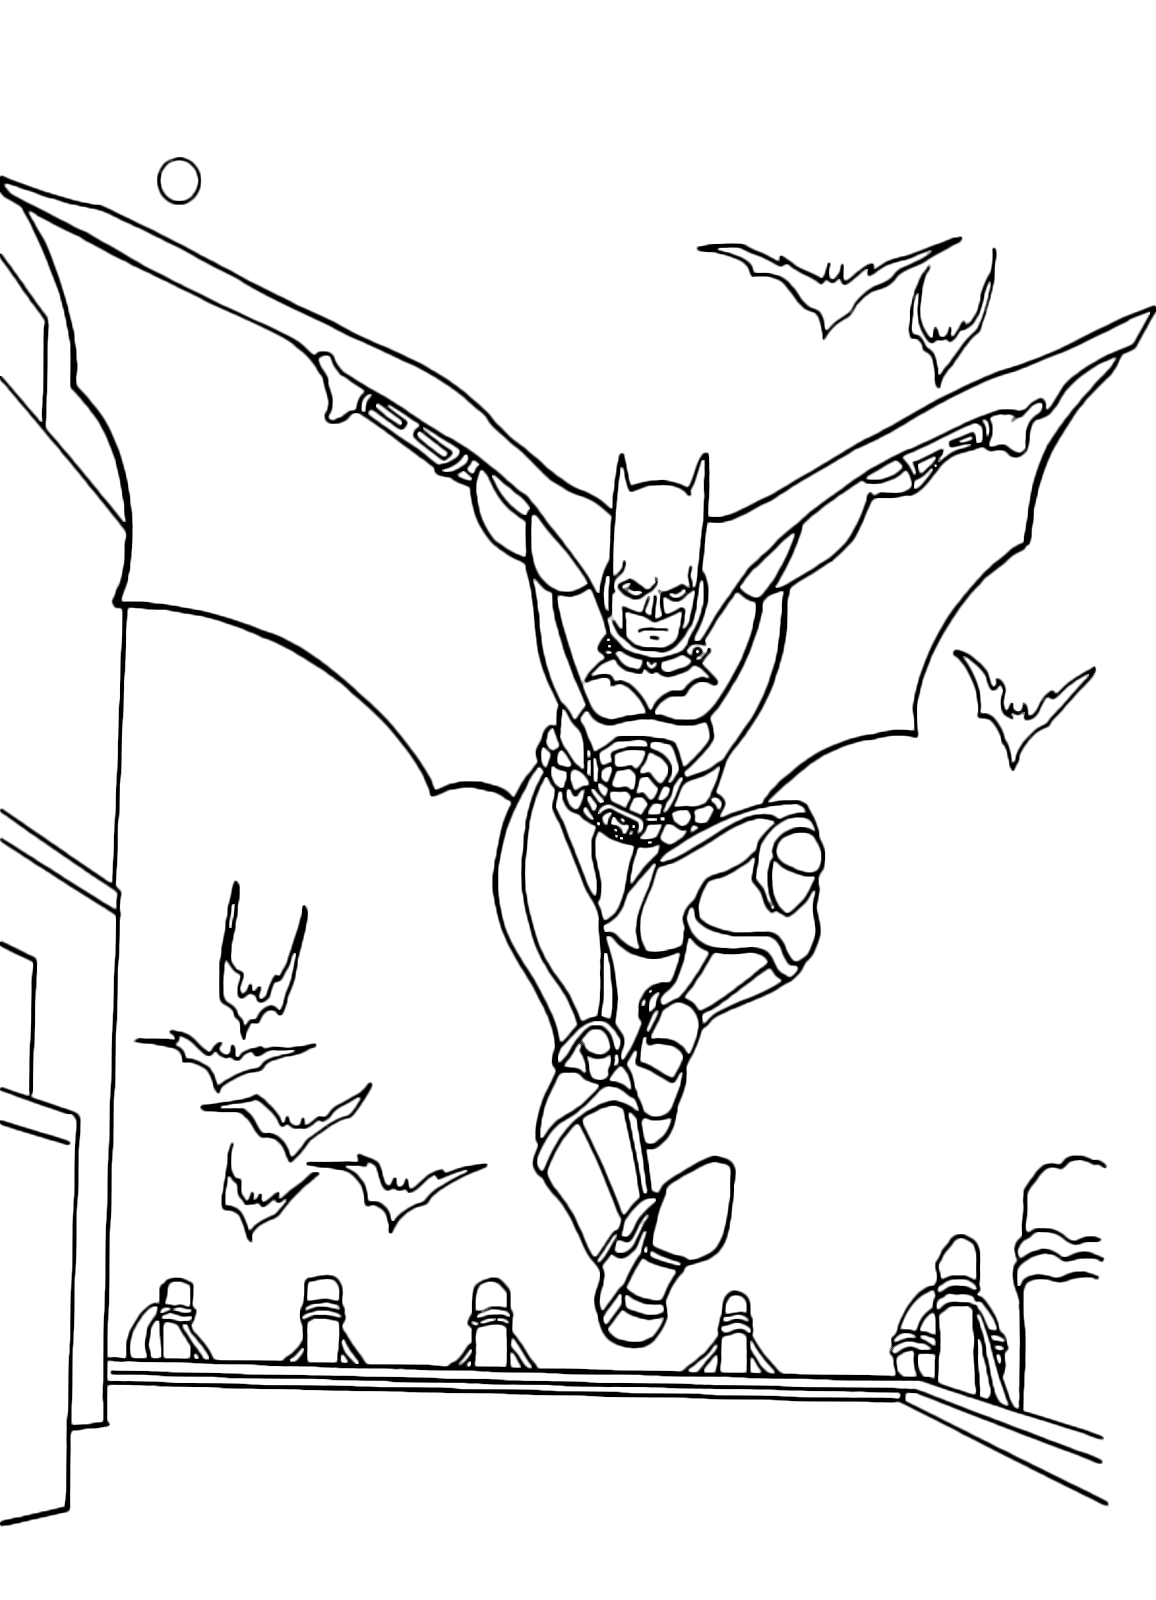 Batman - Batman vola fra i palazzi di Gotham City